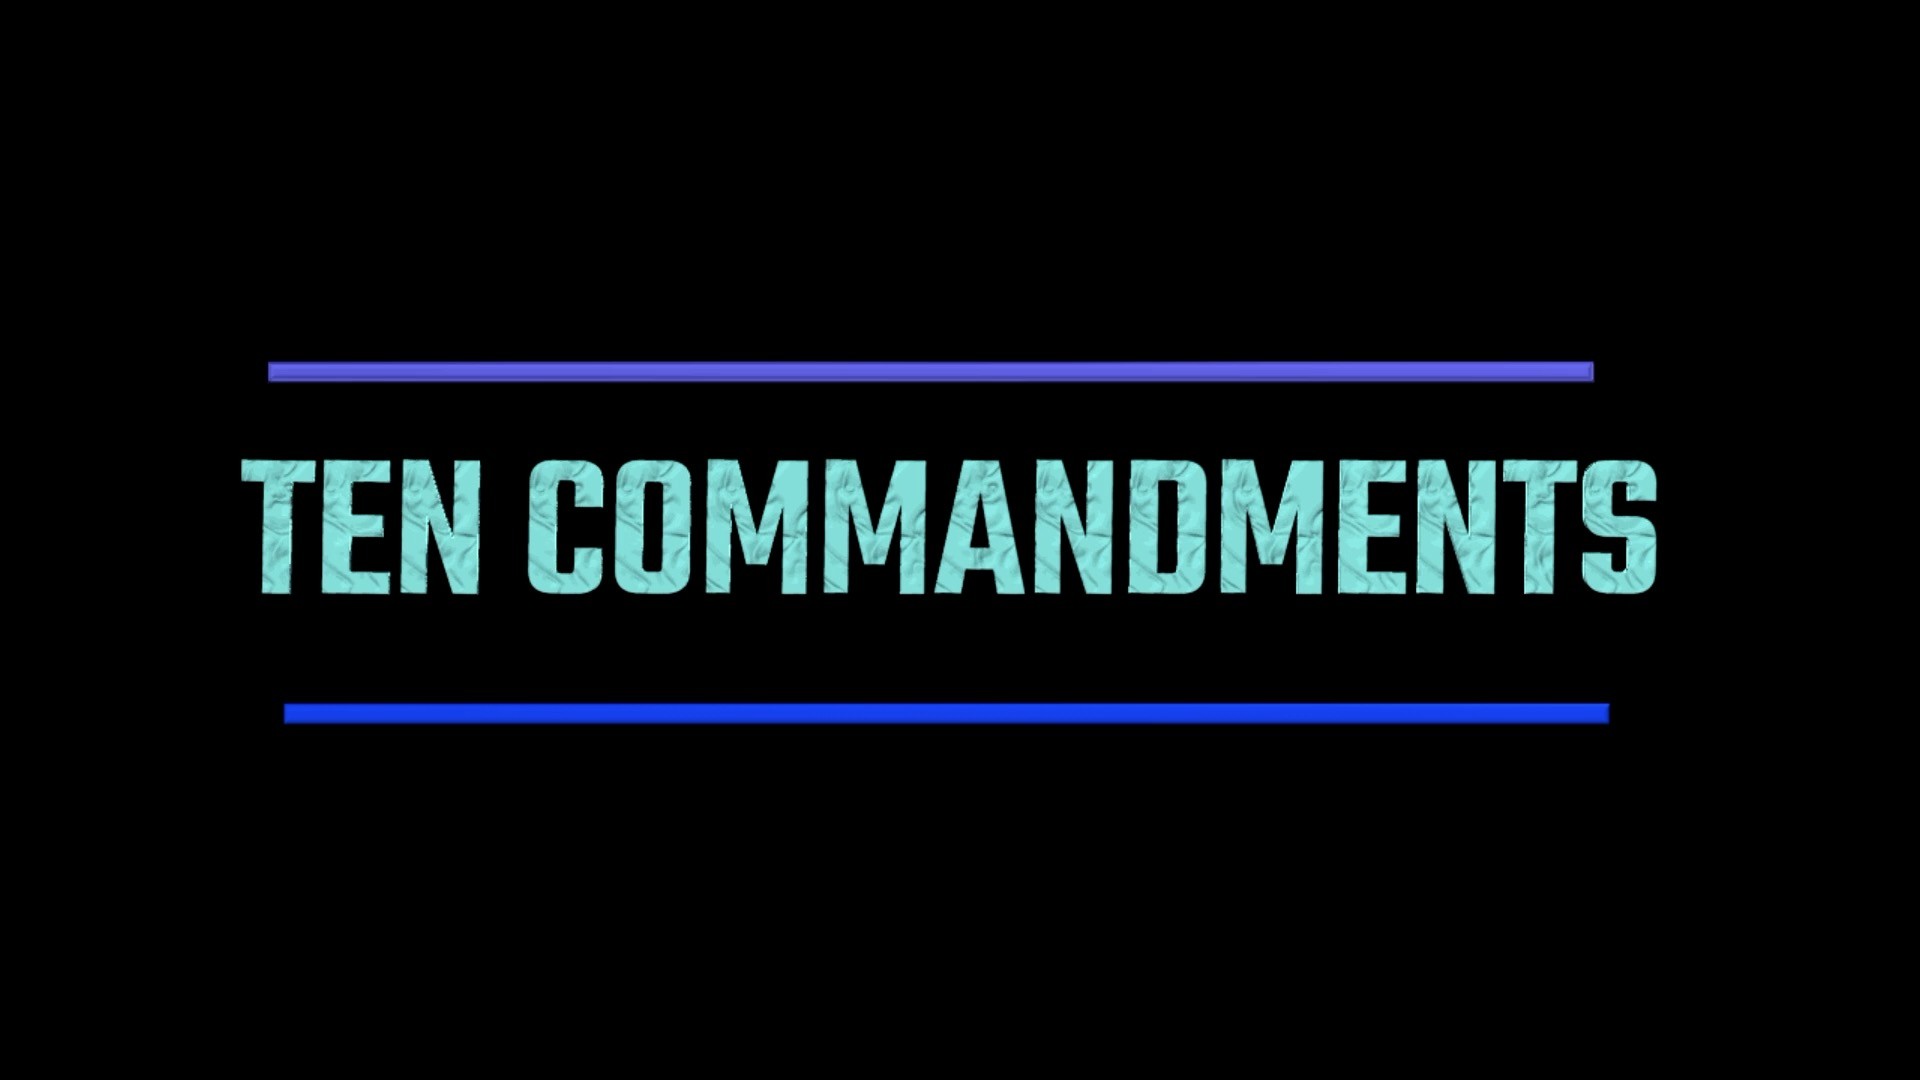 Ten Commandments Song